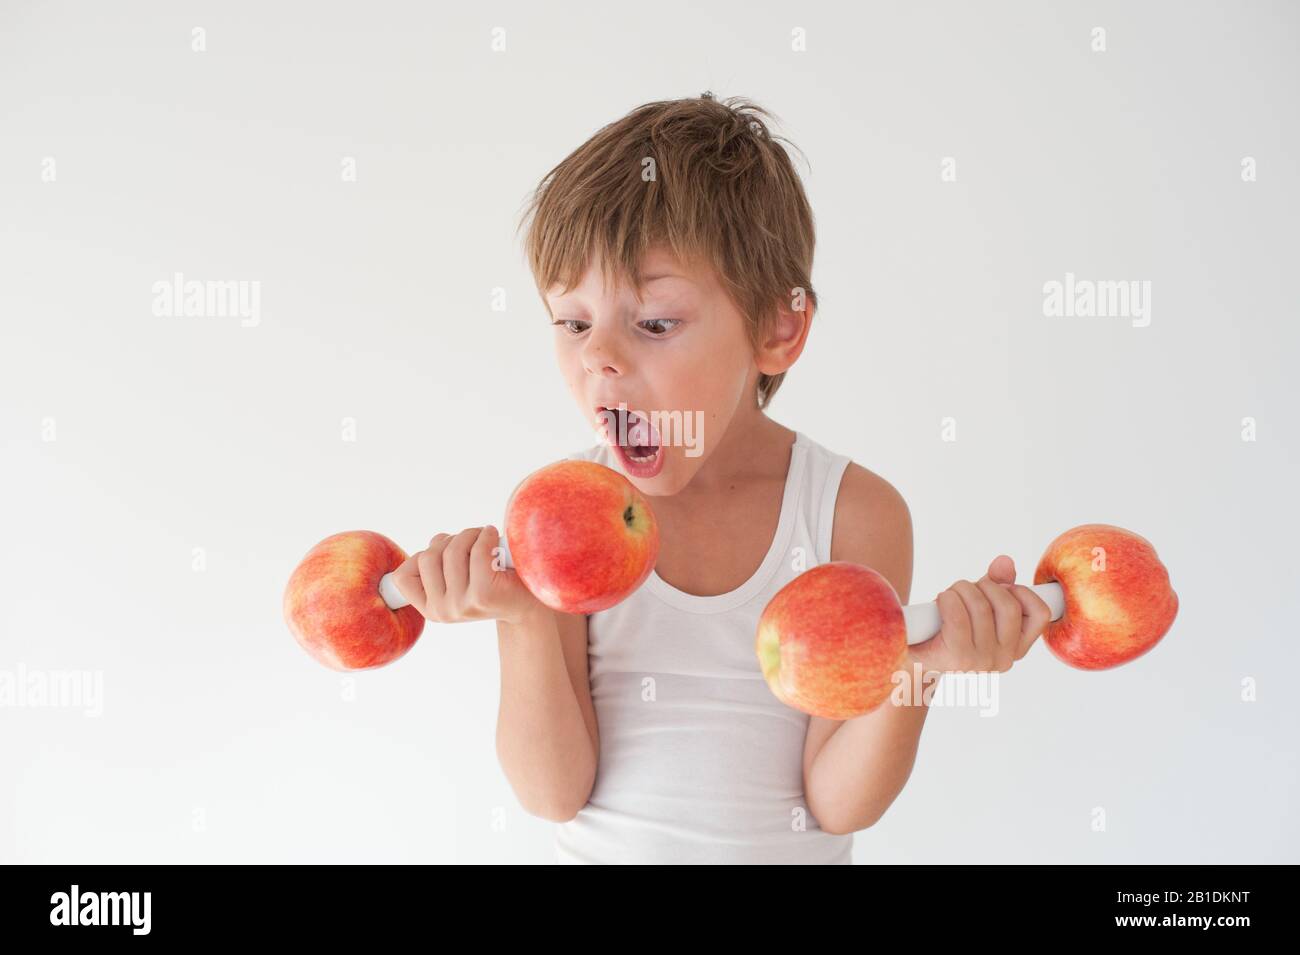 Hungrig aktiv starkes kleines Kind in Tanktop mit Hanteln aus apfelfrüchten, die beißen möchten Stockfoto